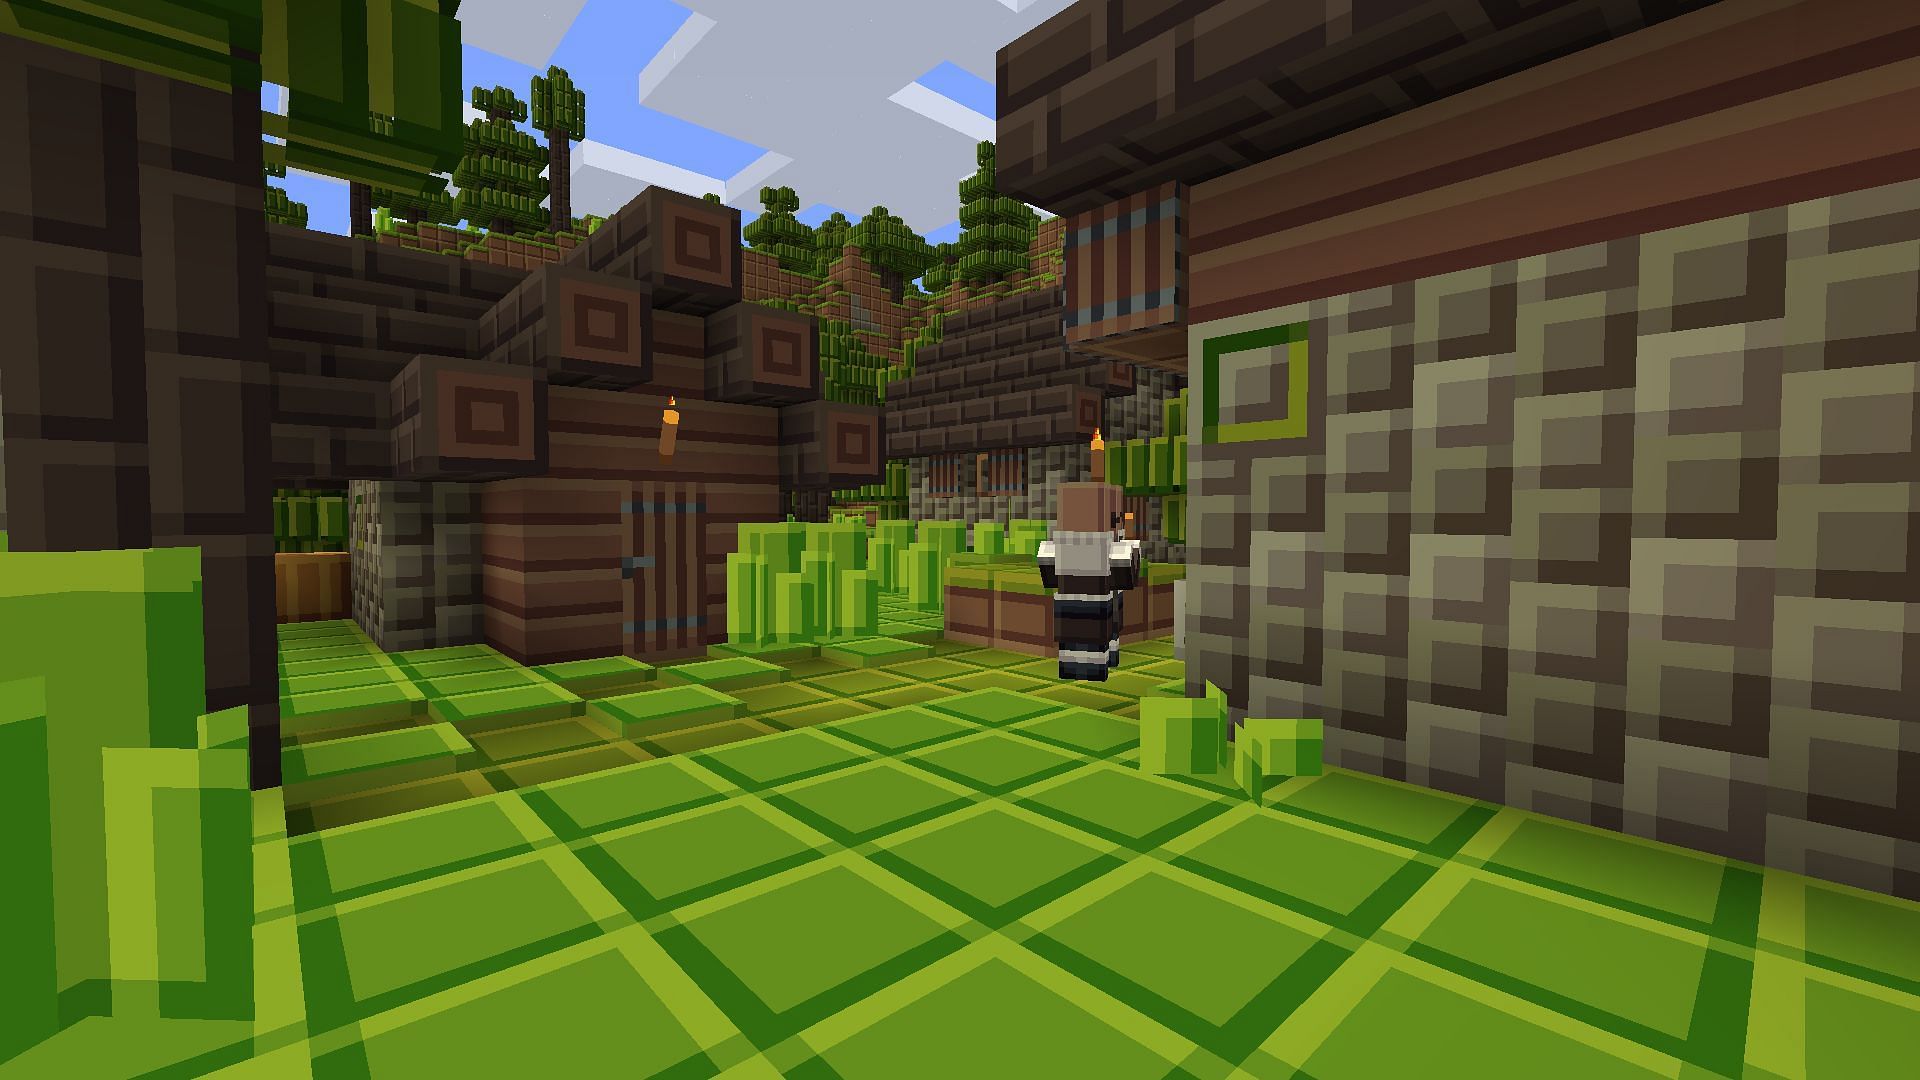 A Tiny Pixel spruce village. (Image via Minecraft)